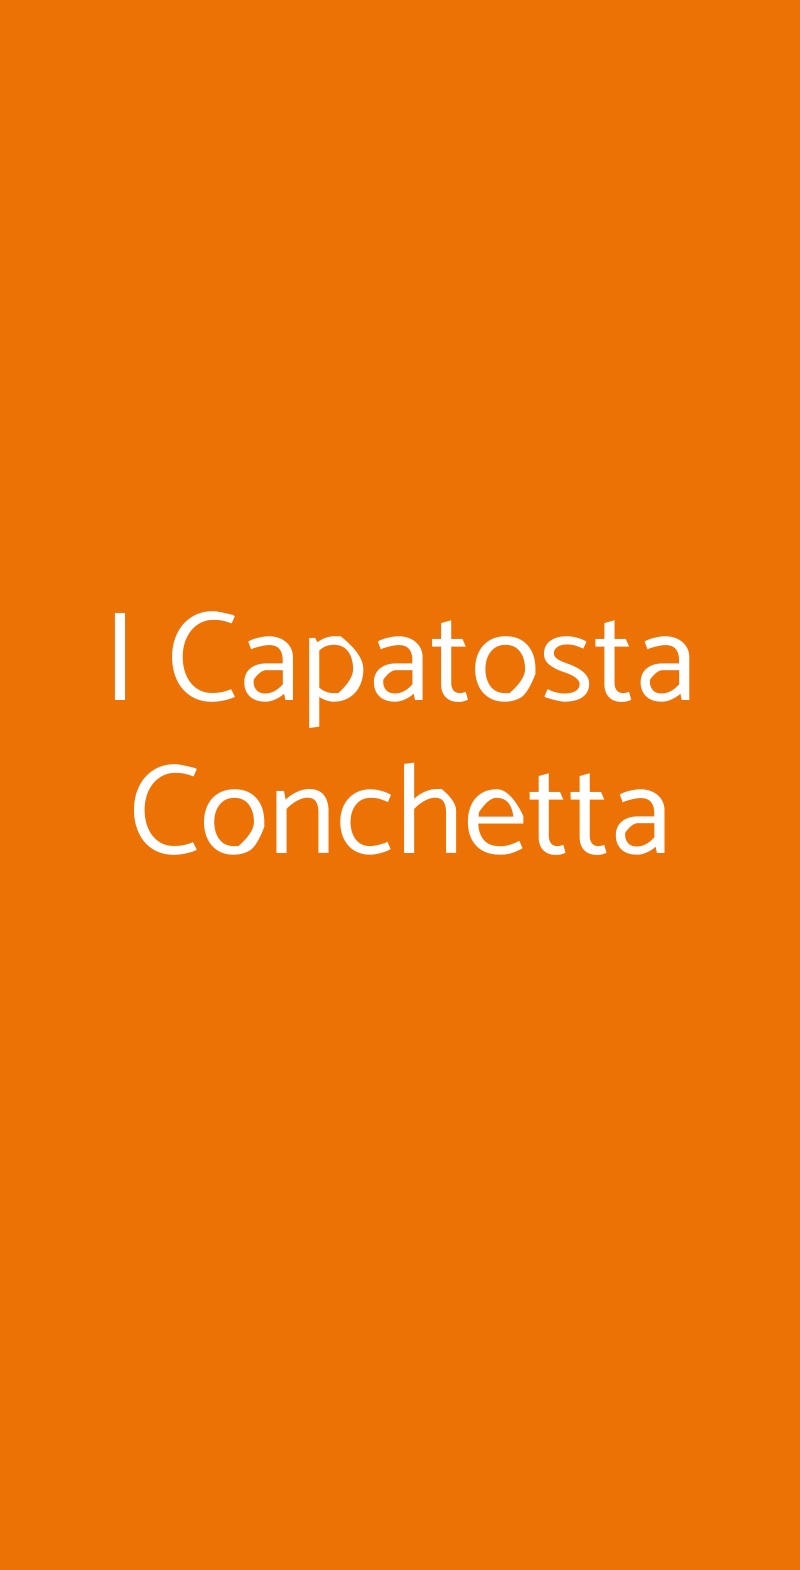 I Capatosta Conchetta Milano menù 1 pagina